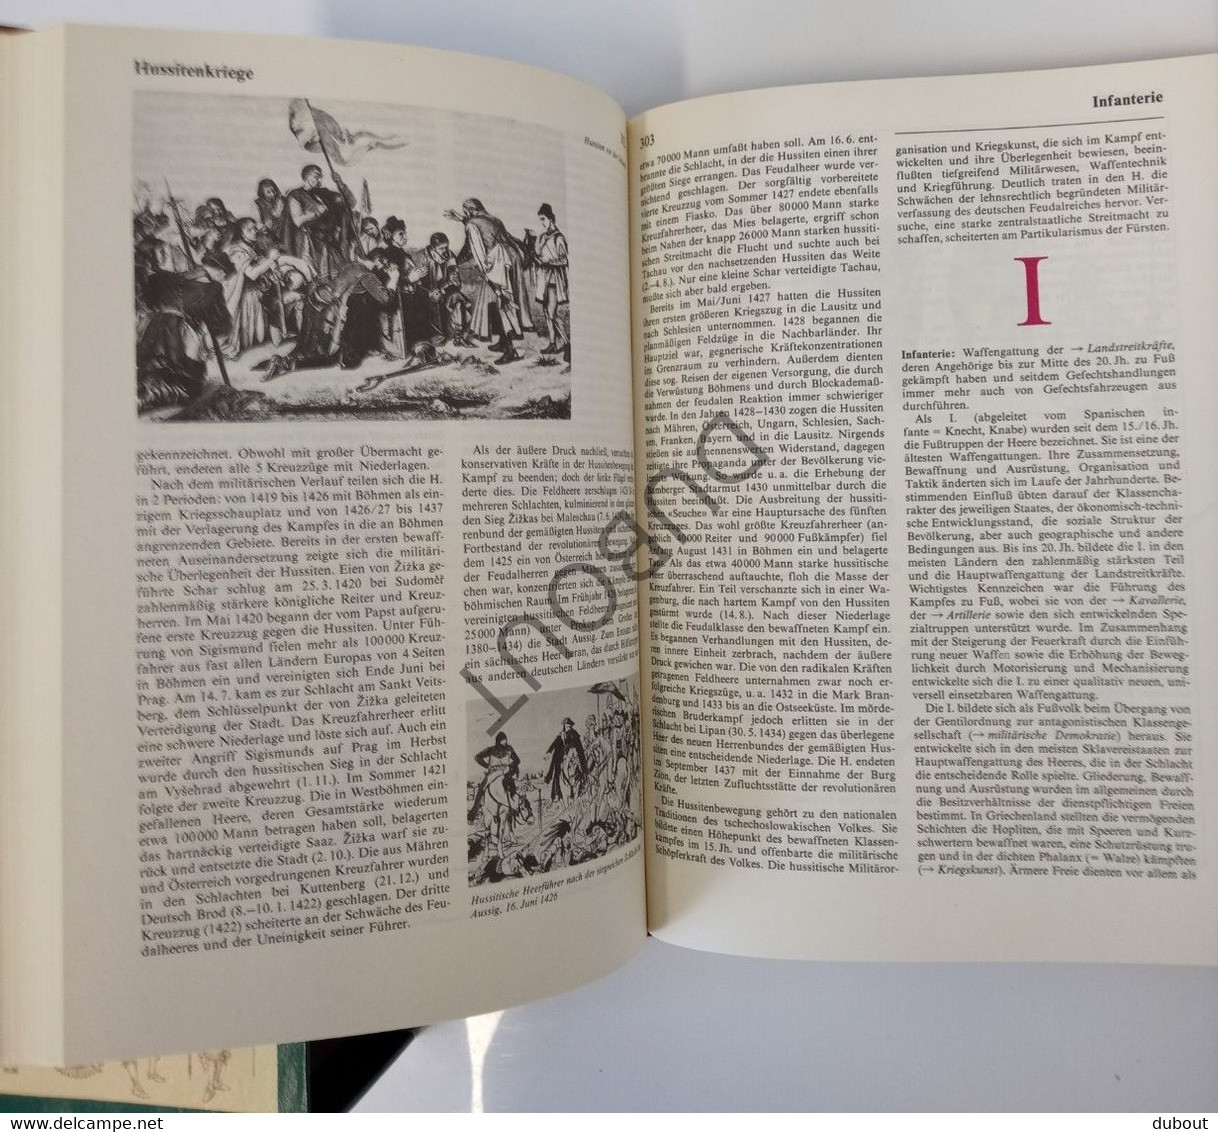 Militaria - Wôrterbuch Zur Deutschen Militärgeschichte - 1985 - Miliärverlag Der Deutschen Demokratischen Republik(S164) - Encyclopedias